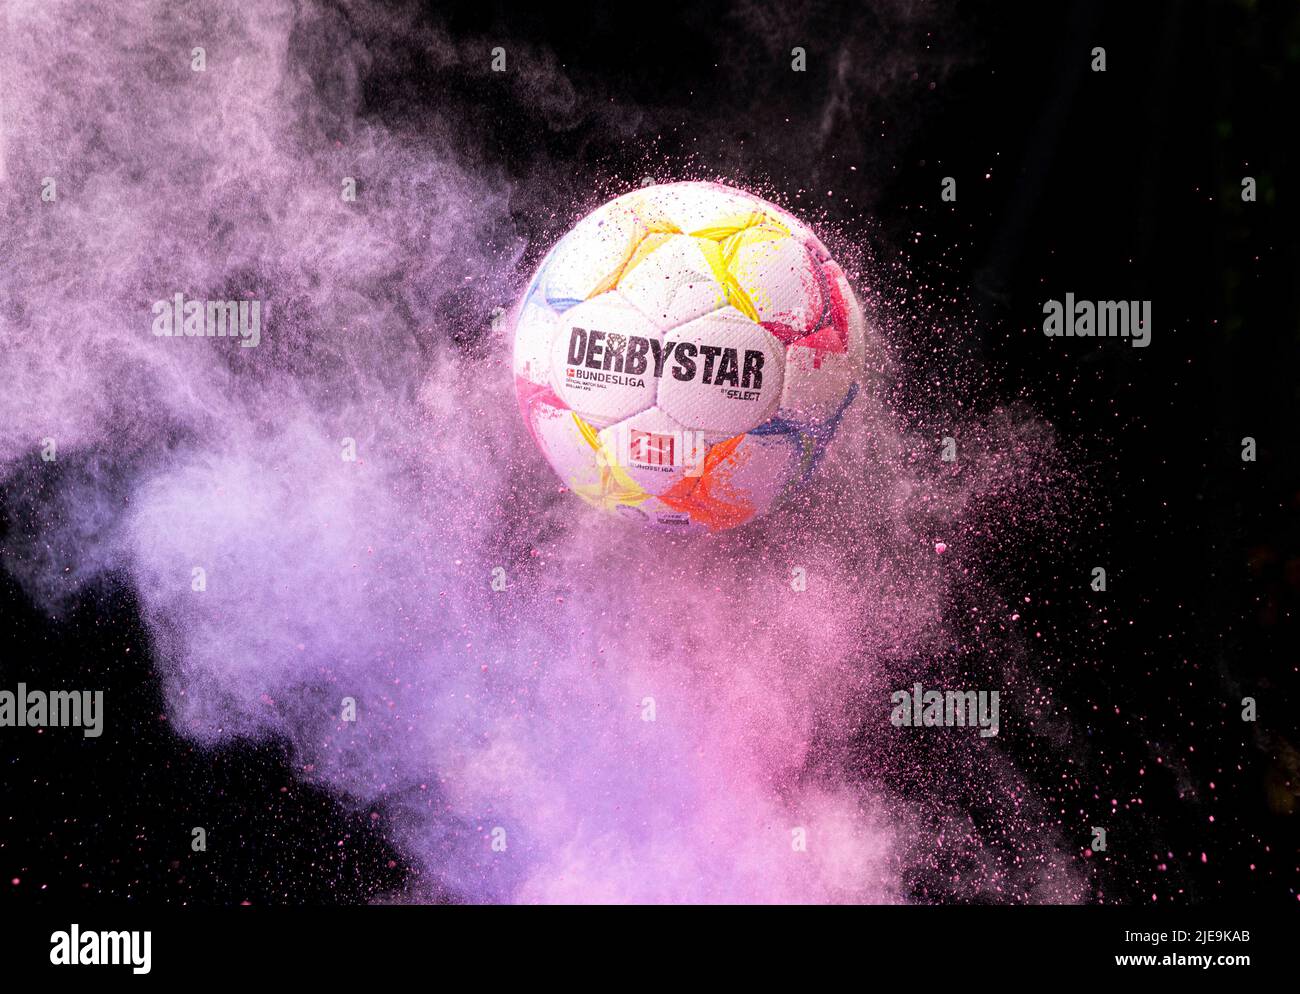 DERBYSTAR Bundesliga Brillant APS 2022 Football Ball - 22/23